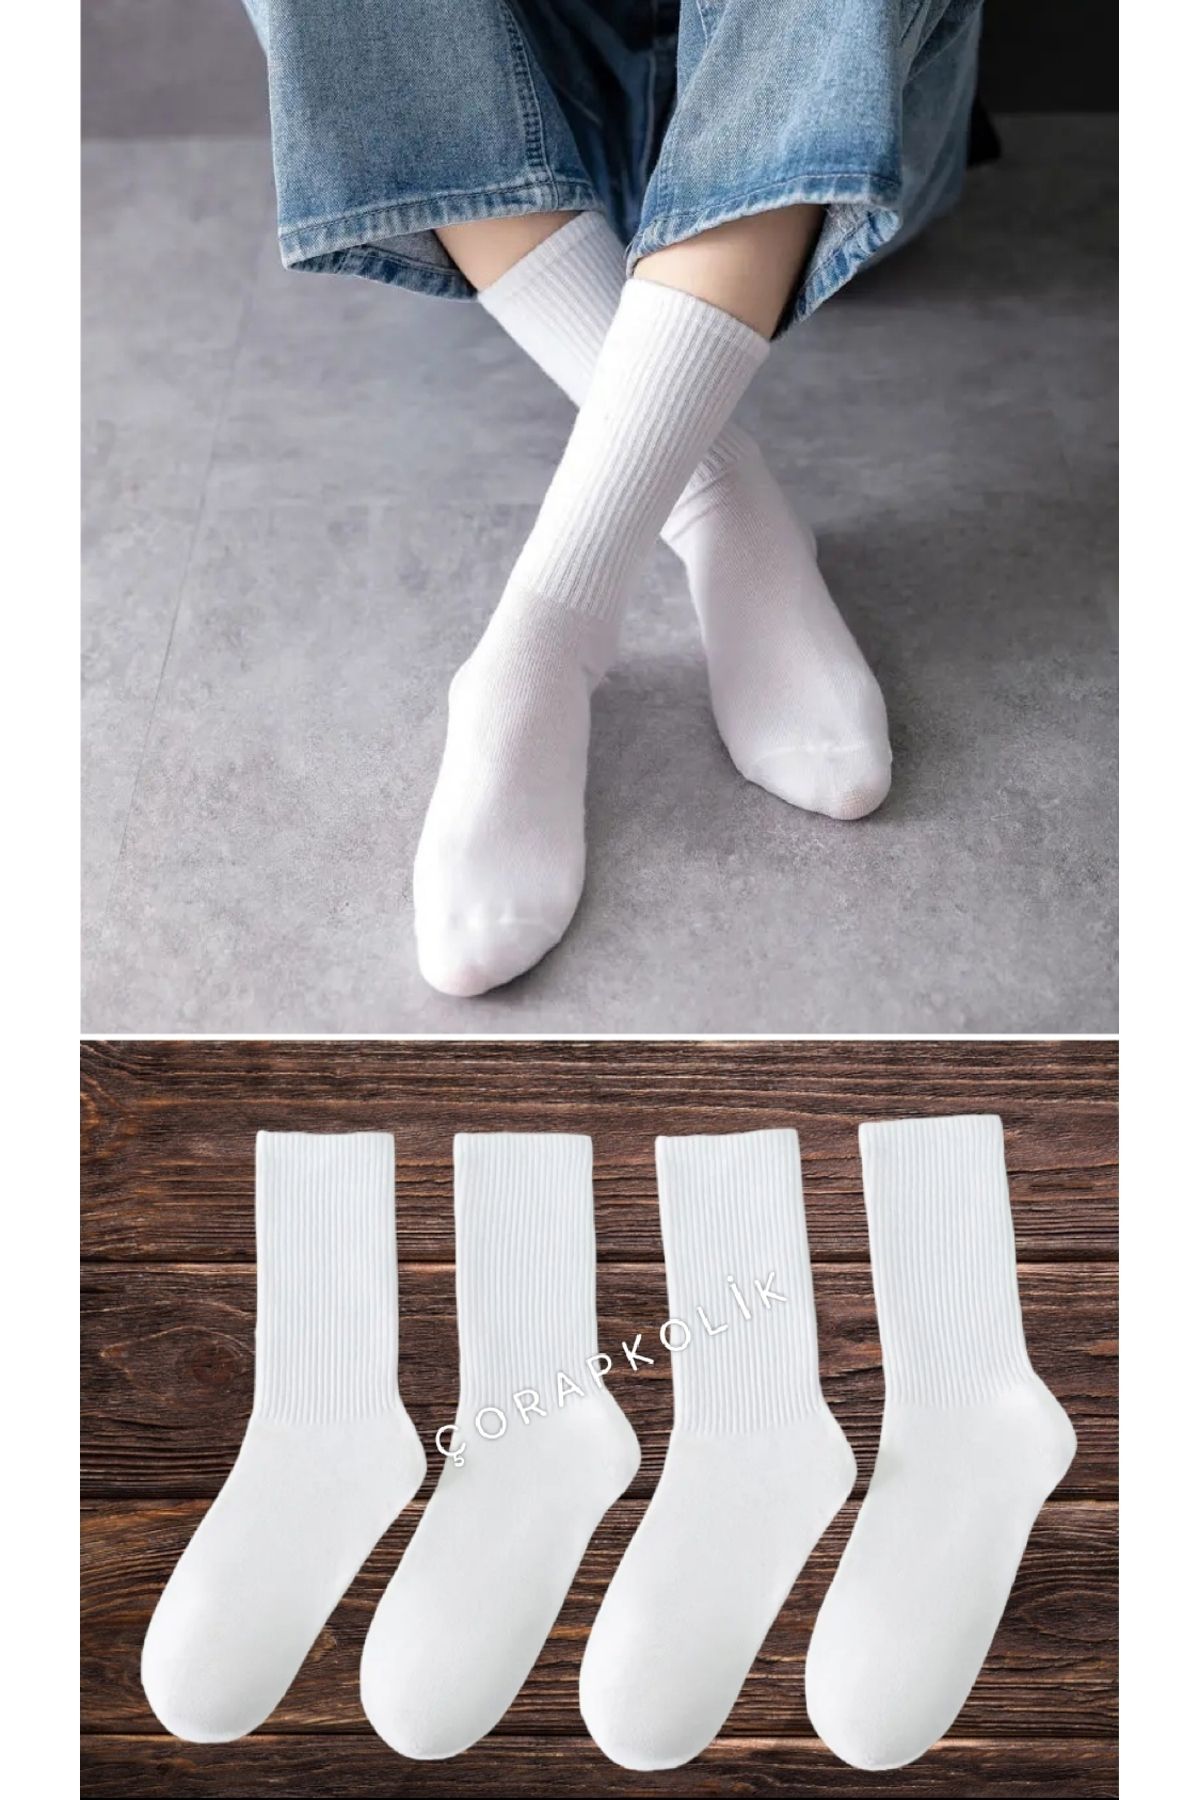 çorapkolik 4'lü Kadın Çizgisiz Beyaz Pamuklu Tenis Kolej Çorap